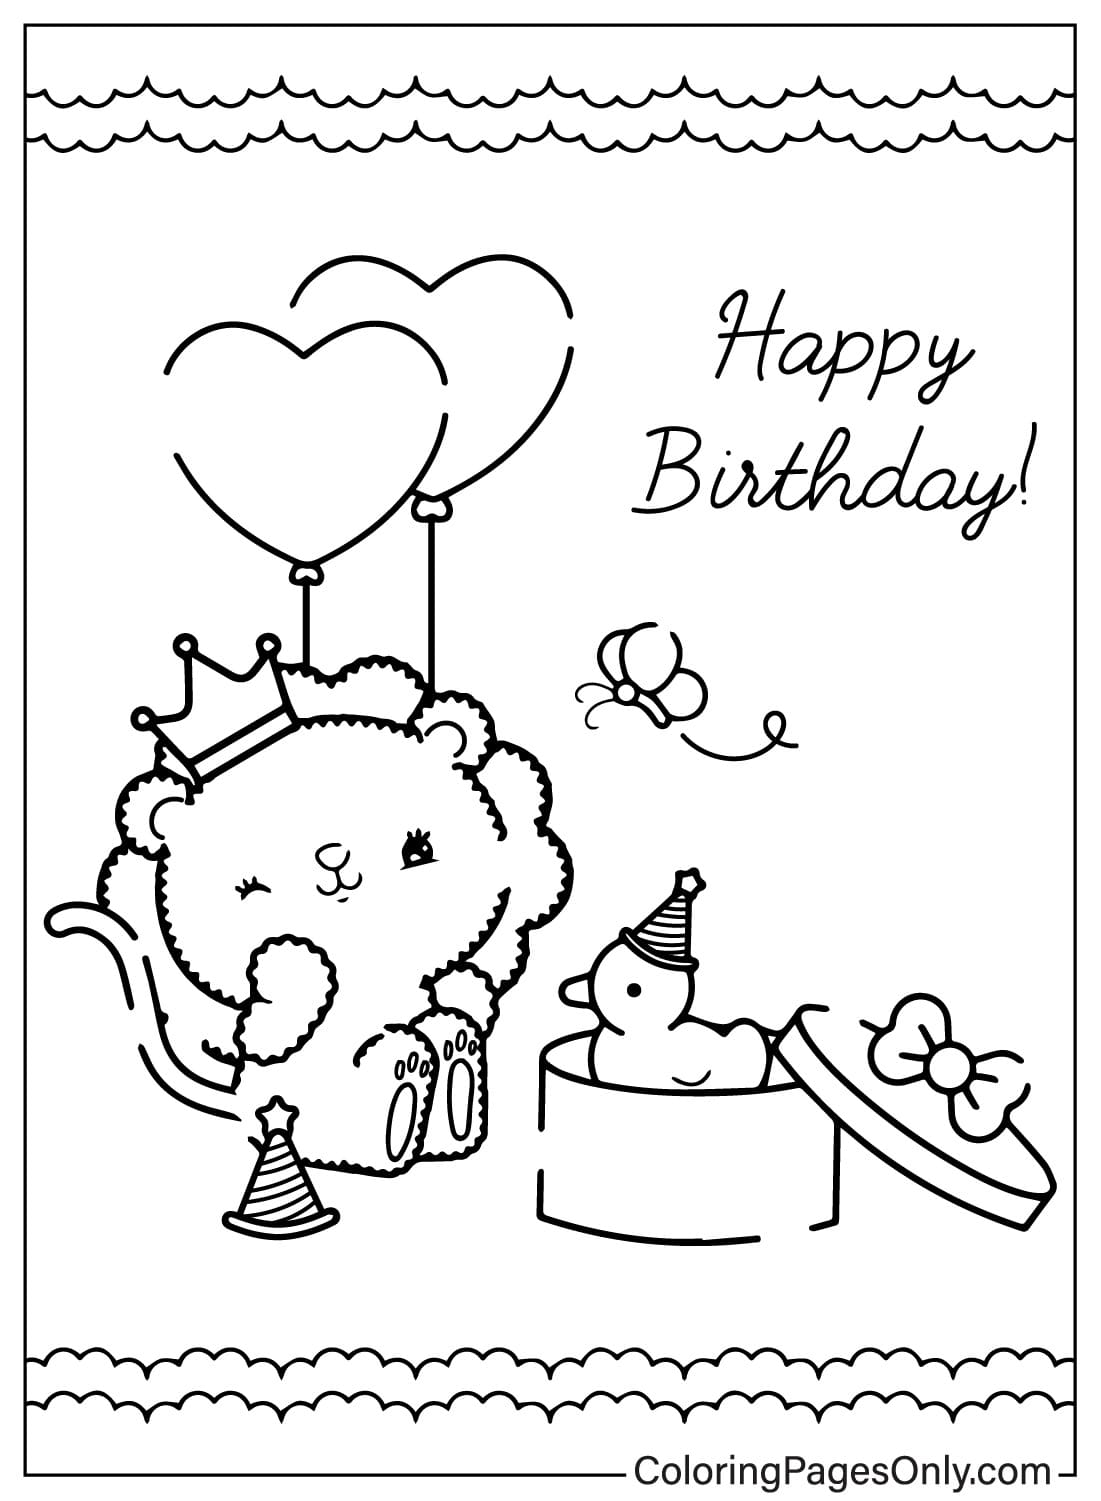 Coloriage de carte de joyeux anniversaire imprimable gratuitement à partir de la carte de joyeux anniversaire